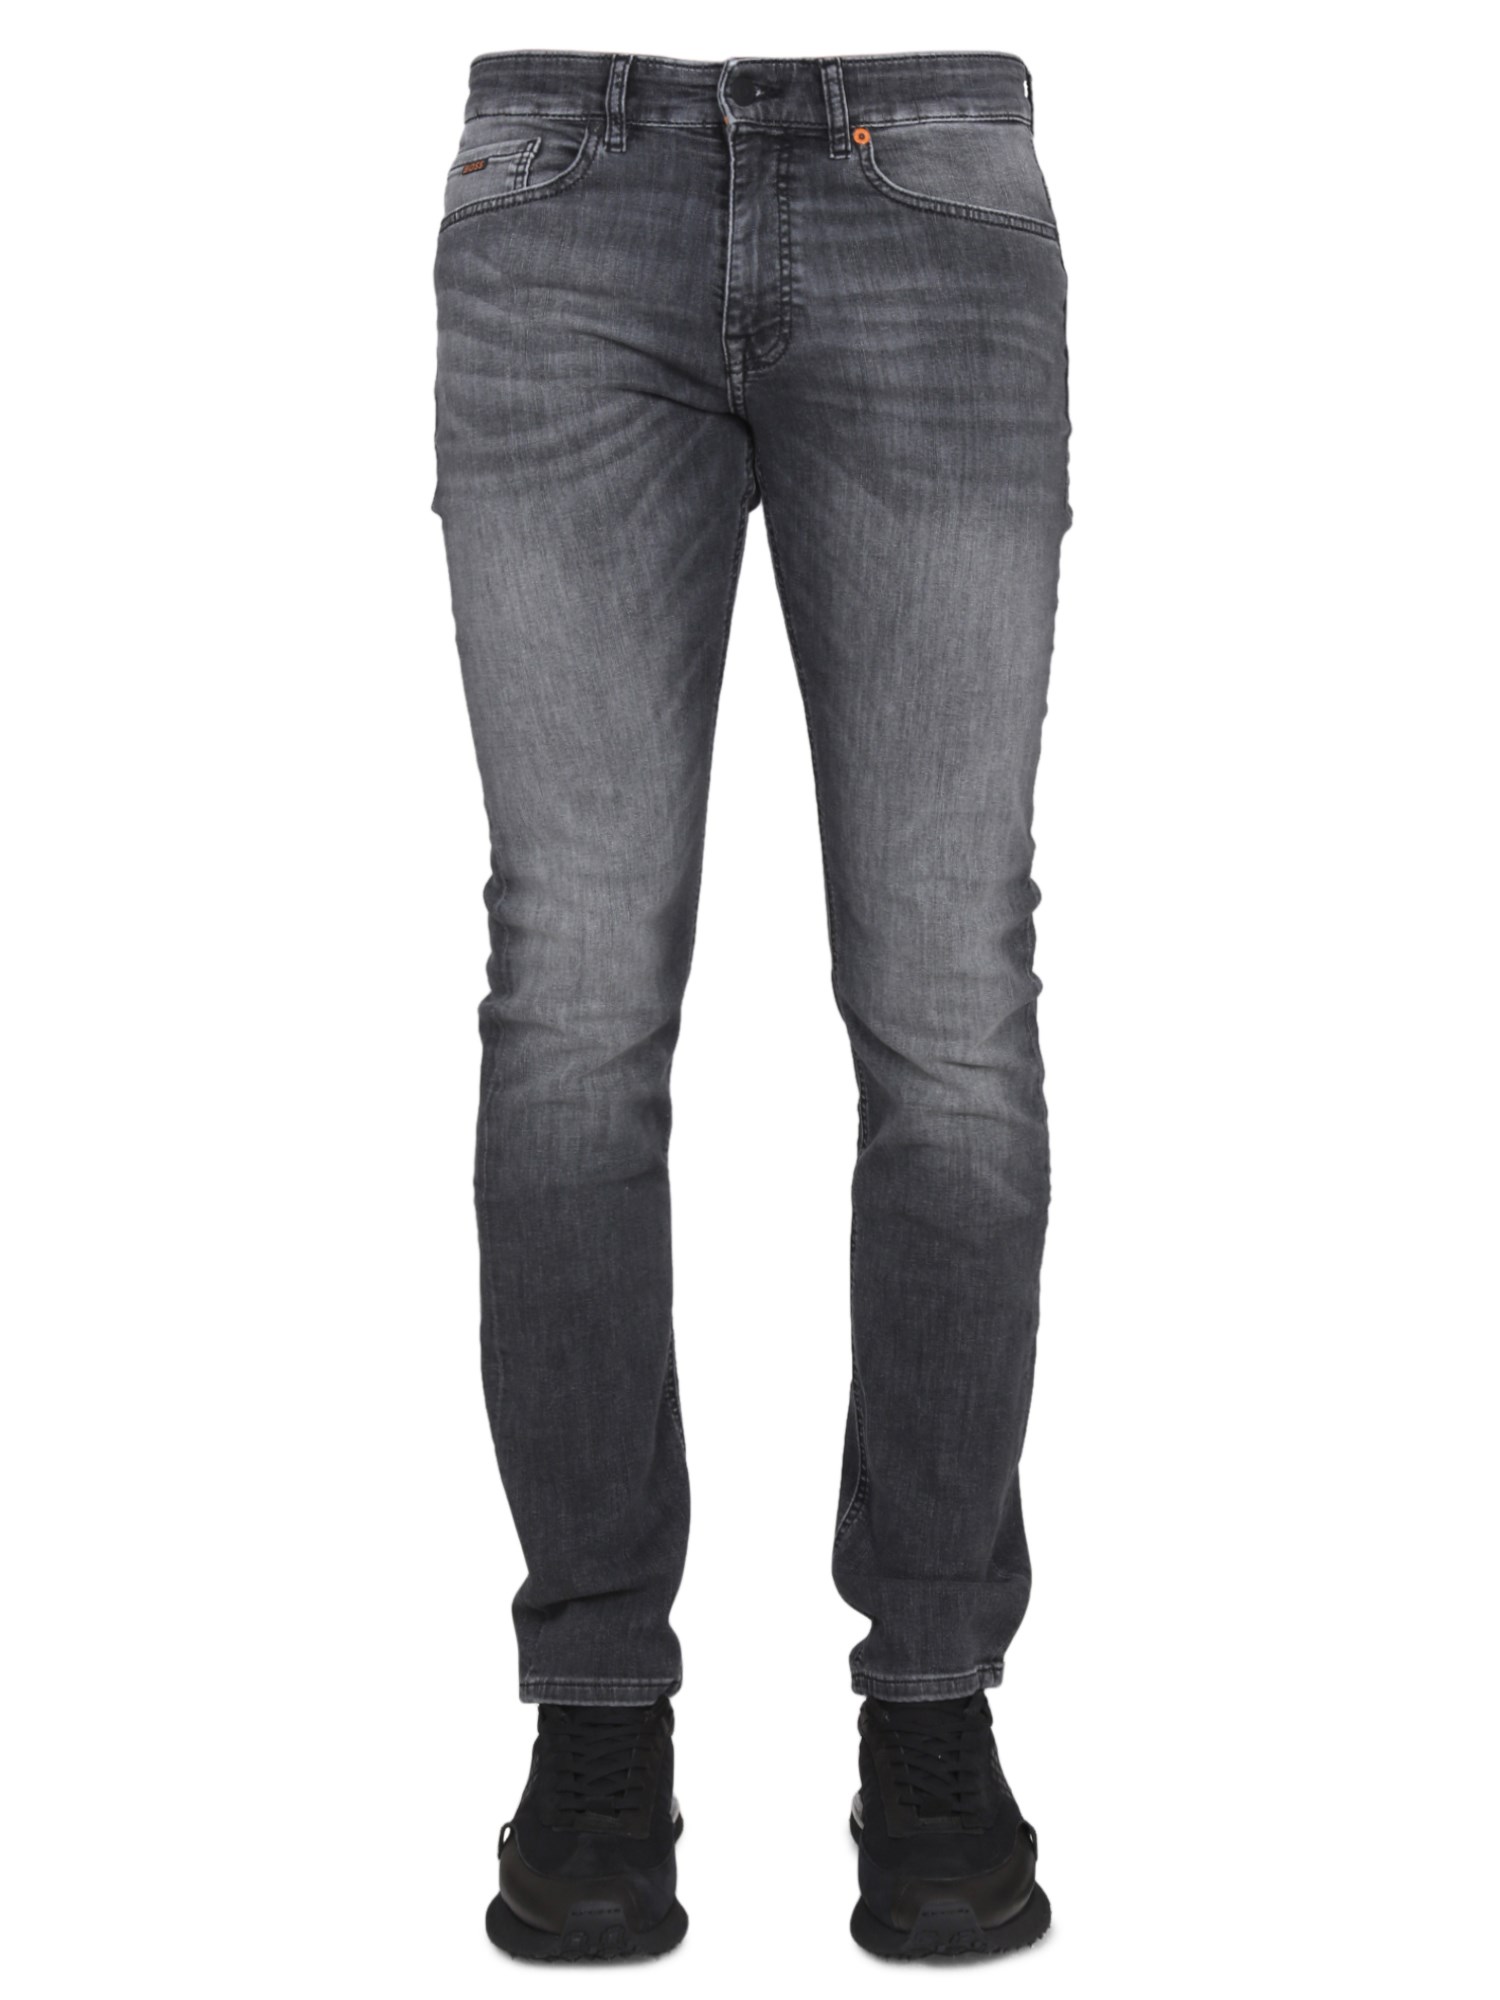 Hugo Boss Slim-fit Jeans In Gray Super-stretch Denim In Dark Grey